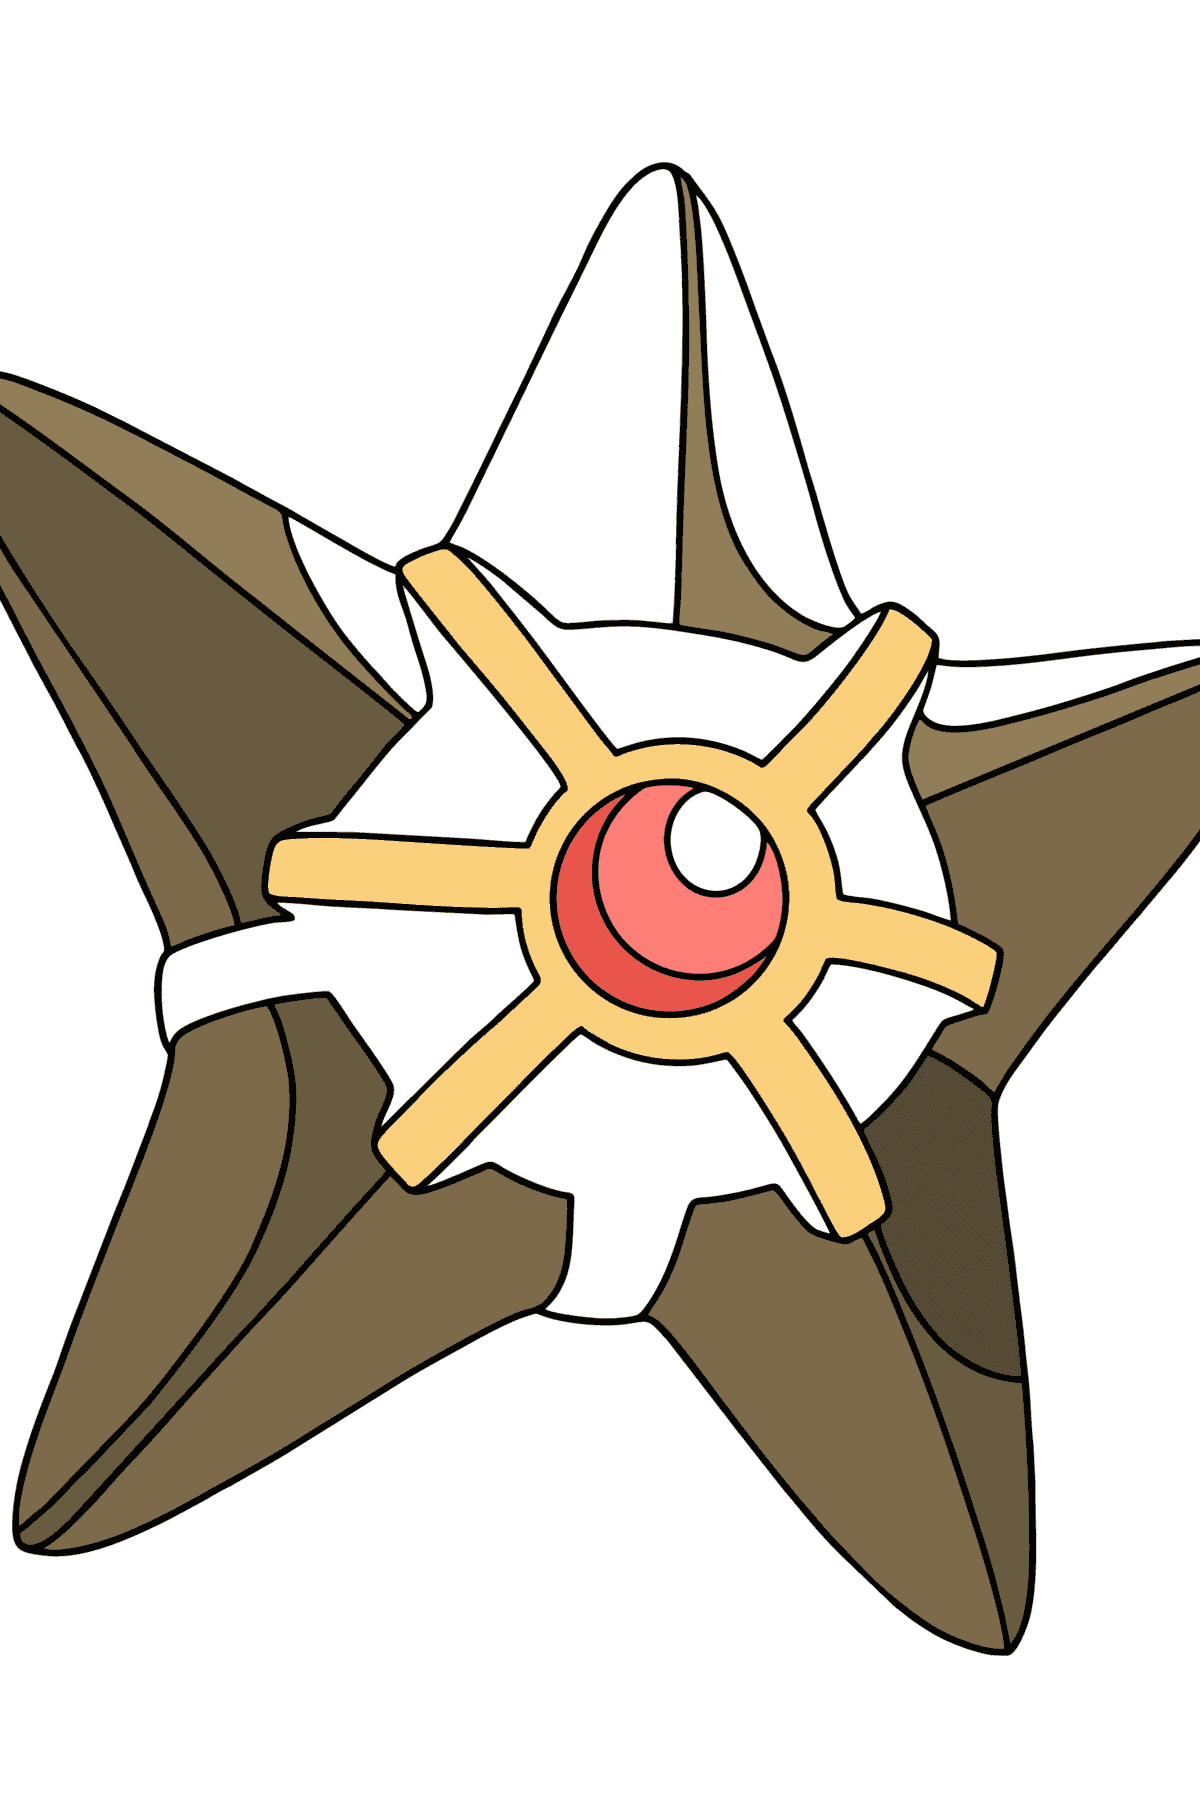 Tegning til fargelegging Pokémon XY Staryu - Tegninger til fargelegging for barn